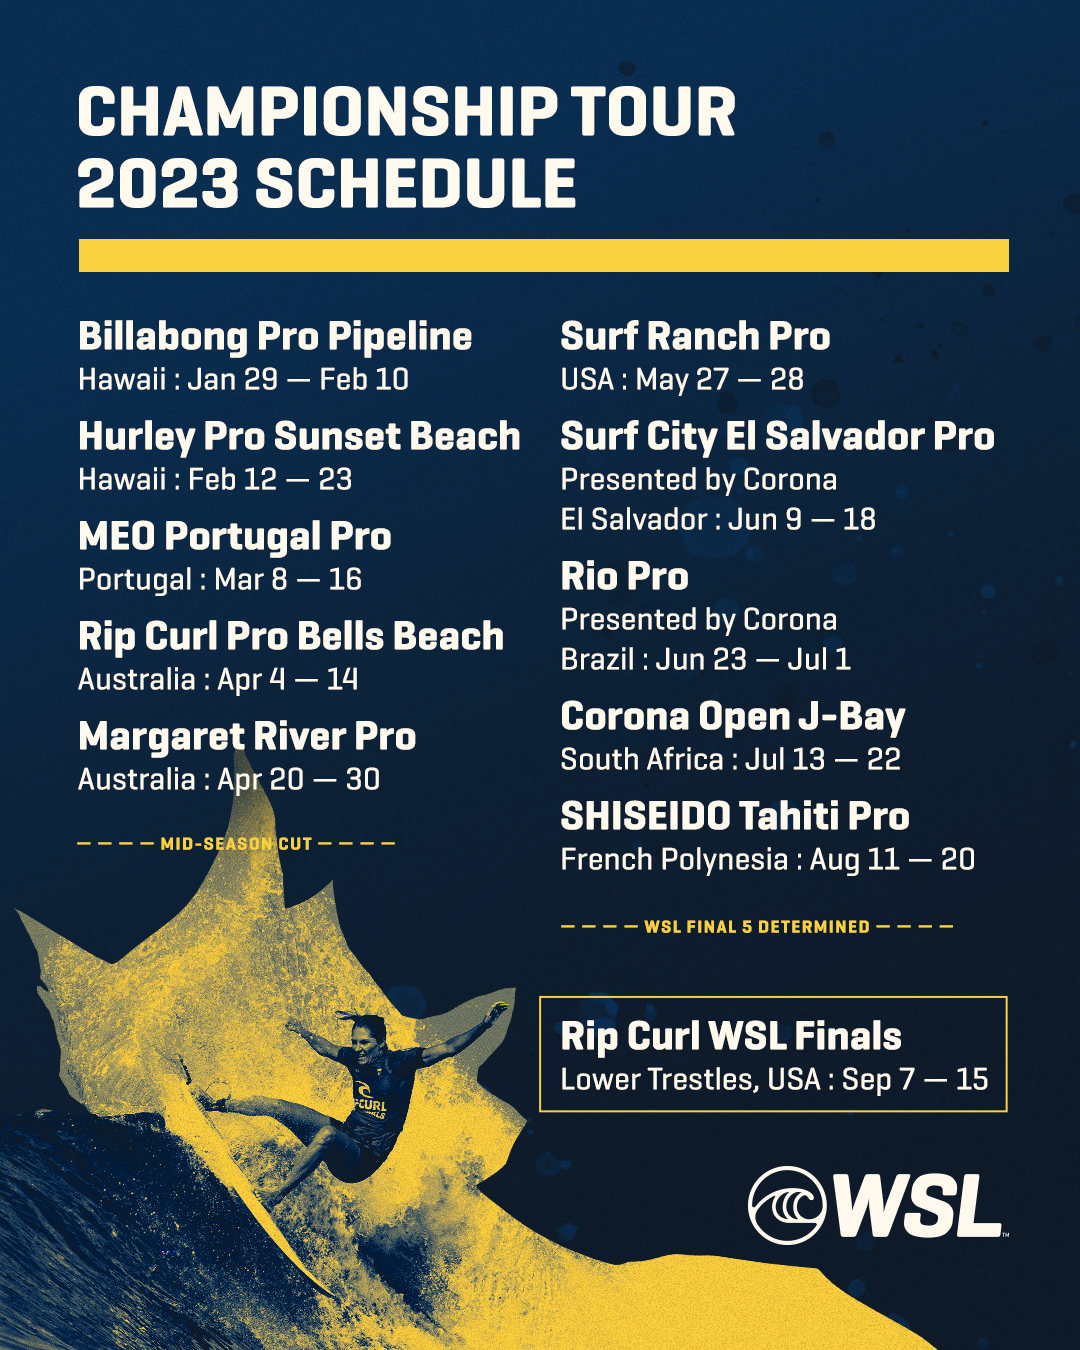 World Surf League anuncia o calendário do Championship Tour 2023